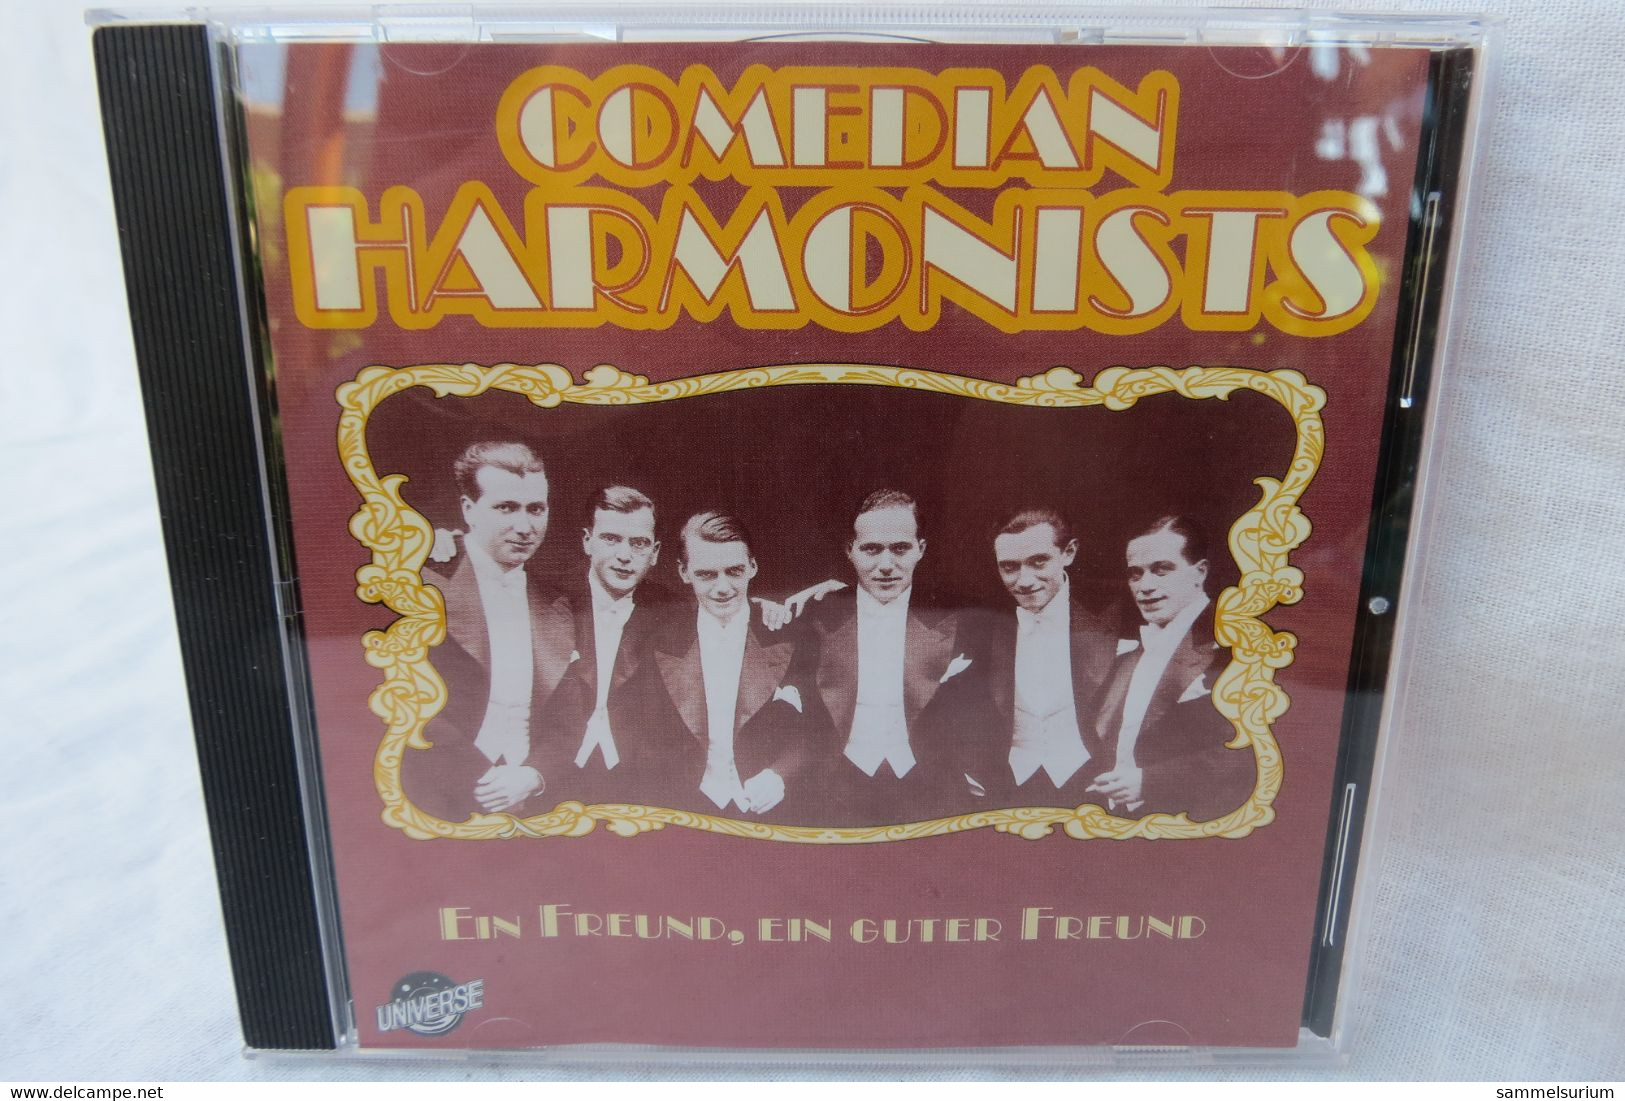 CD "Comedia Harmonists" Ein Freund, Ein Guter Freund - Sonstige - Deutsche Musik